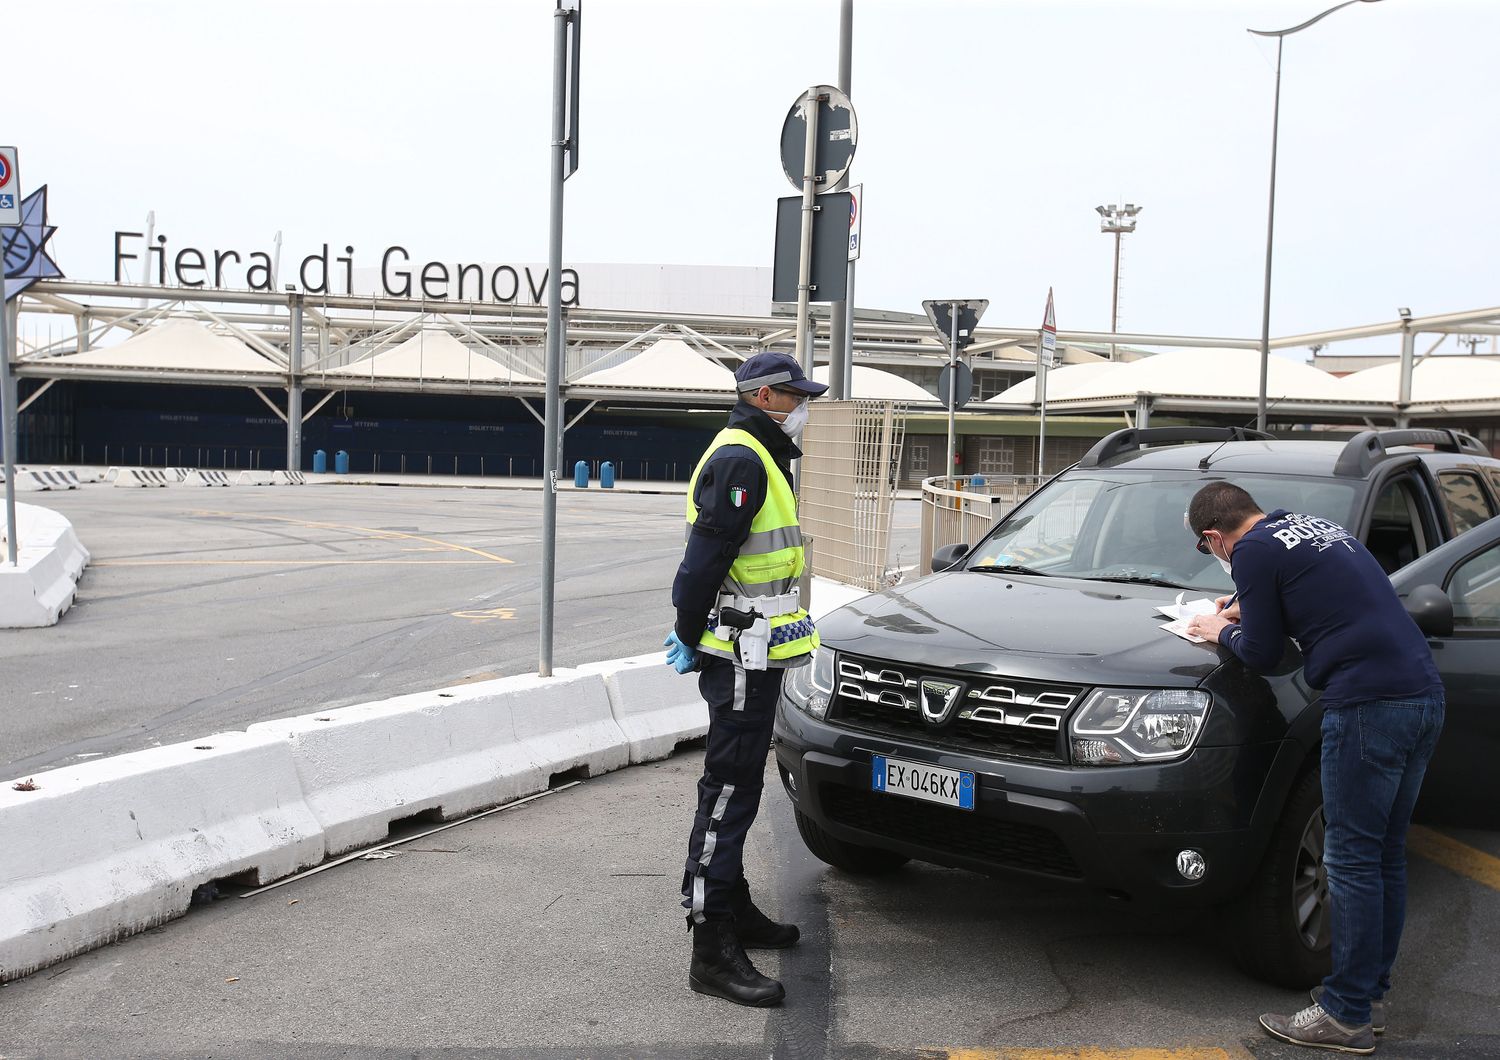 Controlli della polizia municipale a Genova il giorno di Pasquetta